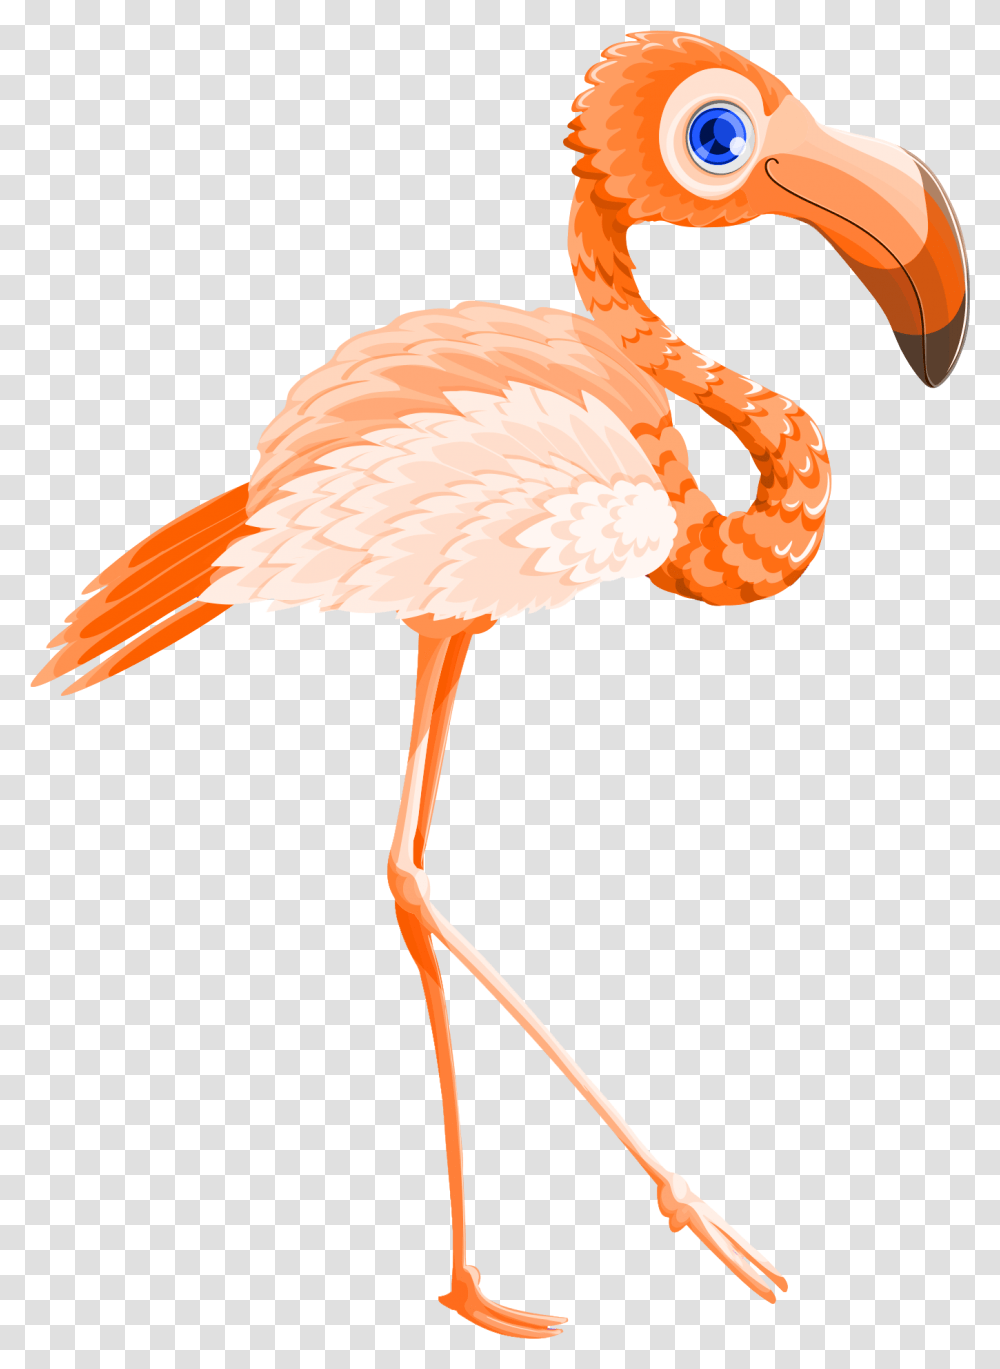 Flamingo Bird Vector Image Pngpix Vector Graphics, Animal, Lamp Transparent Png